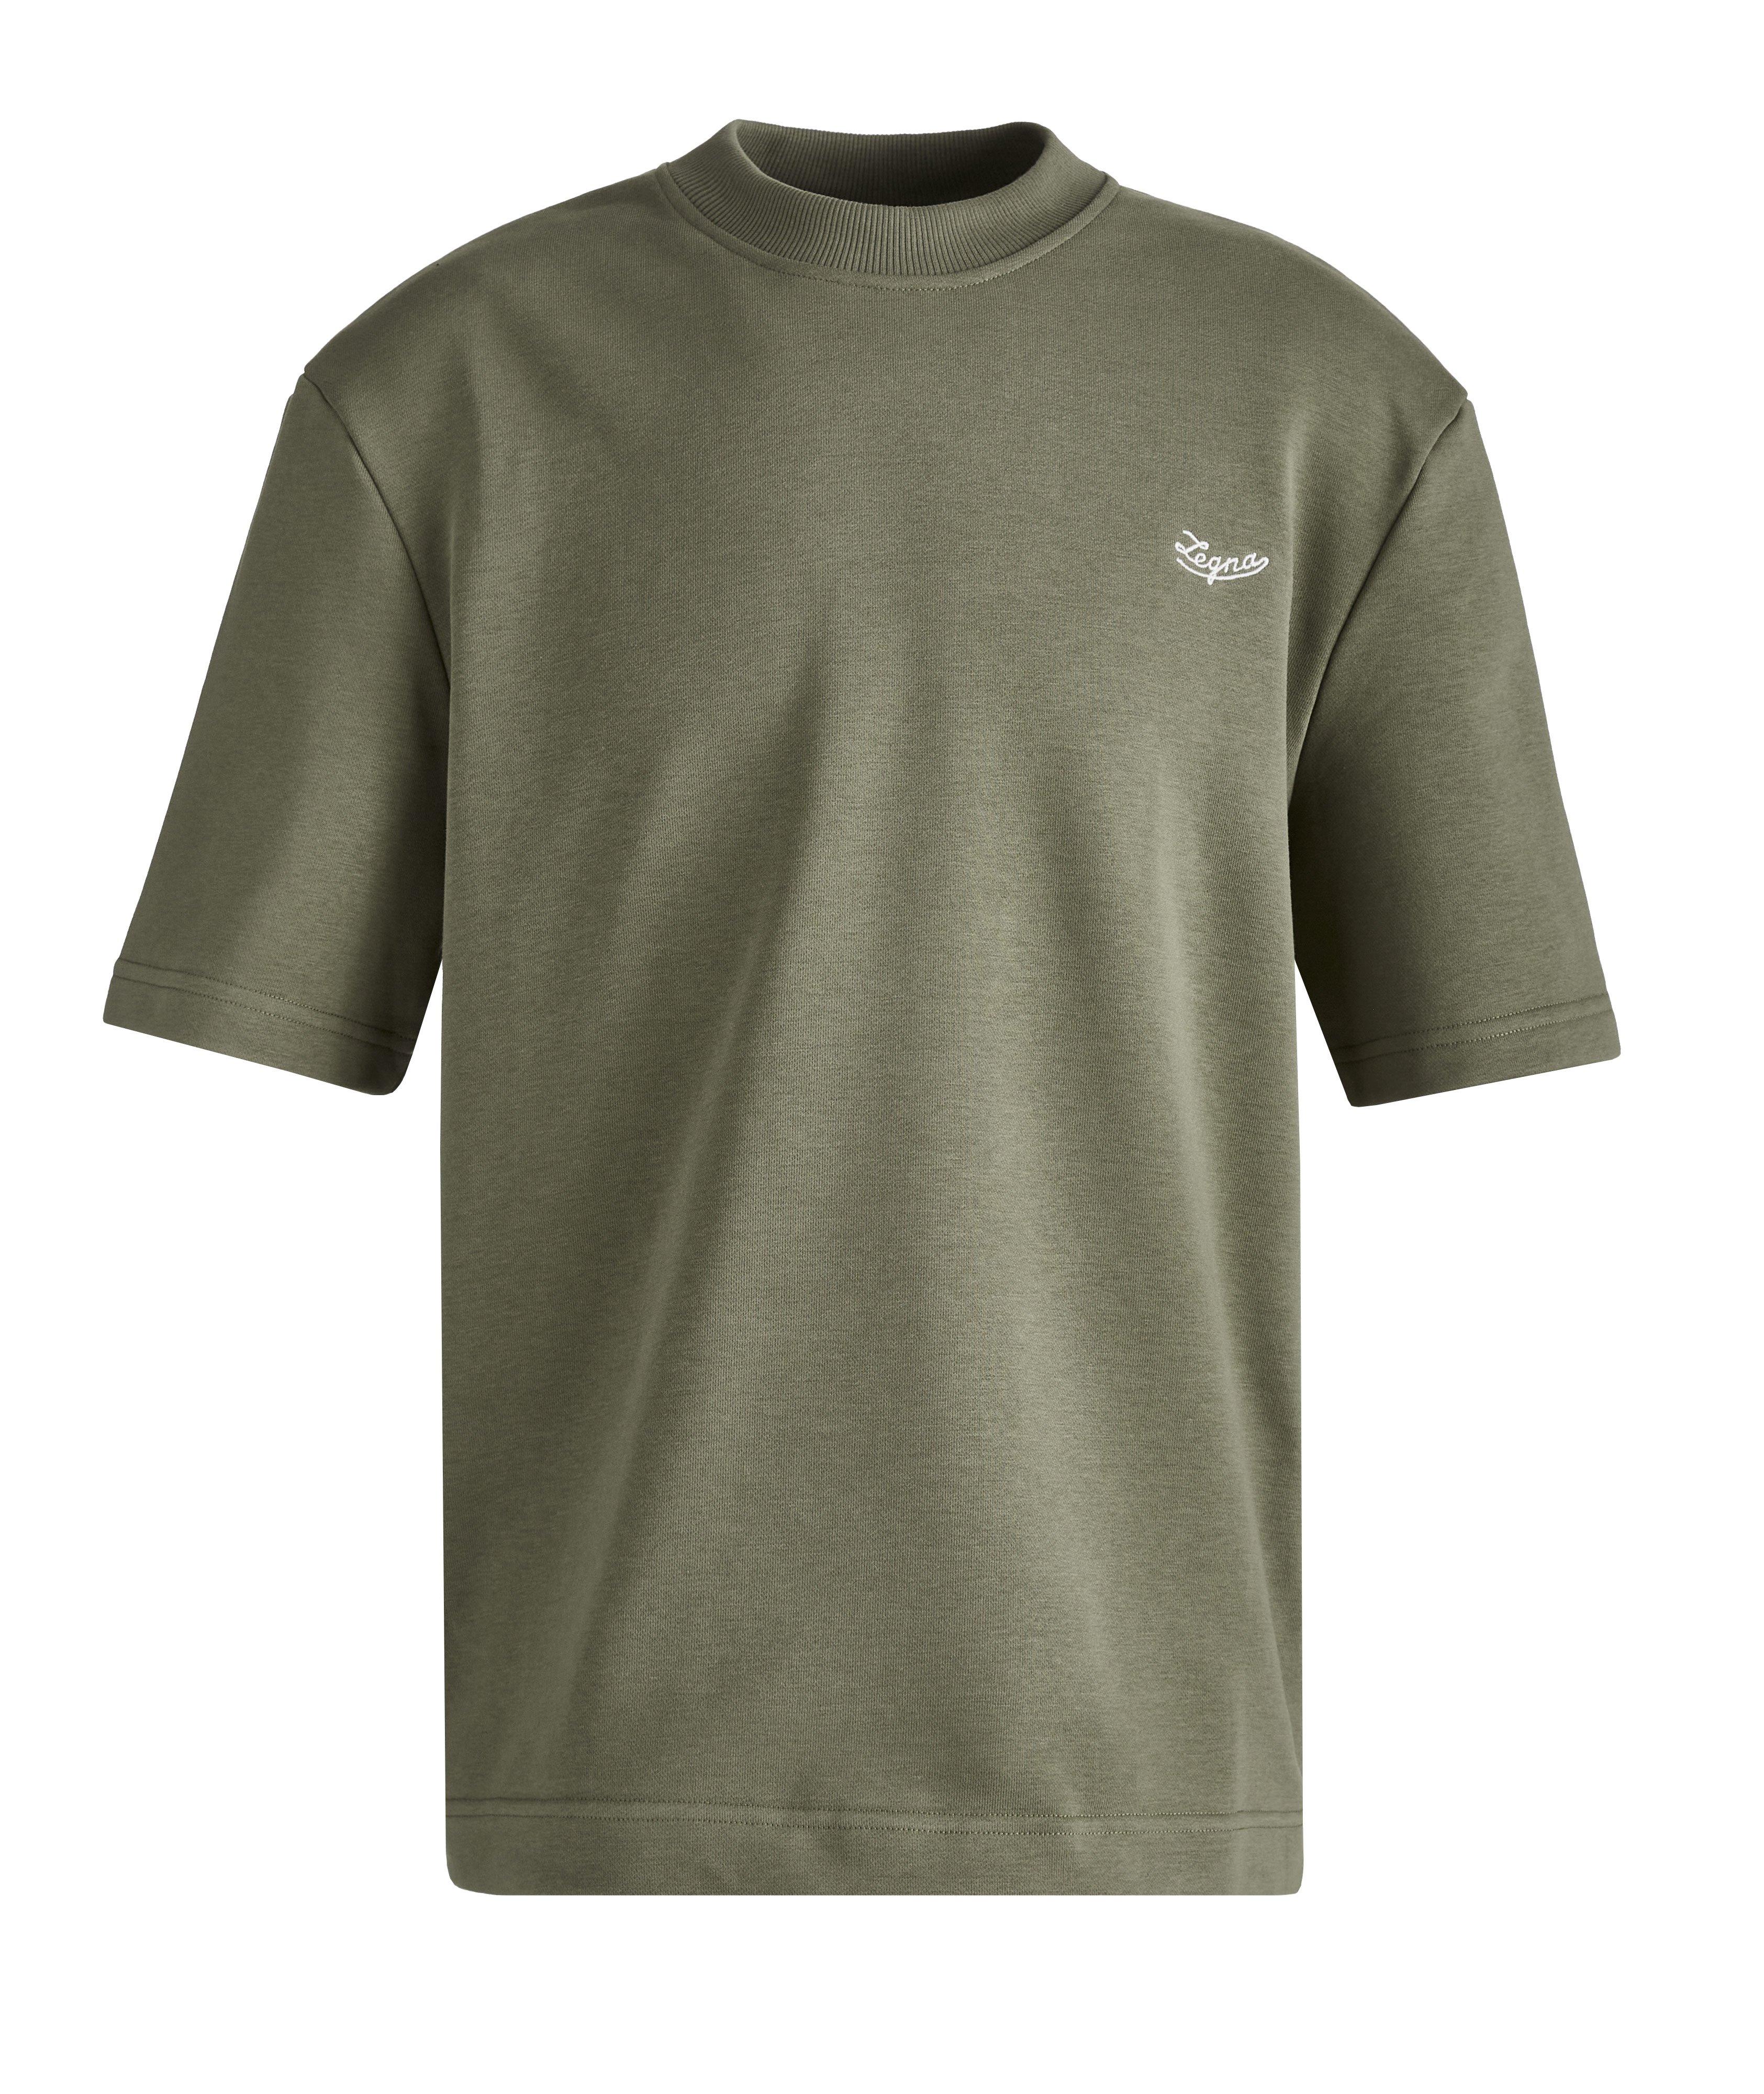 Olive Short Sleeve Crew Neck T-Shirt image 0